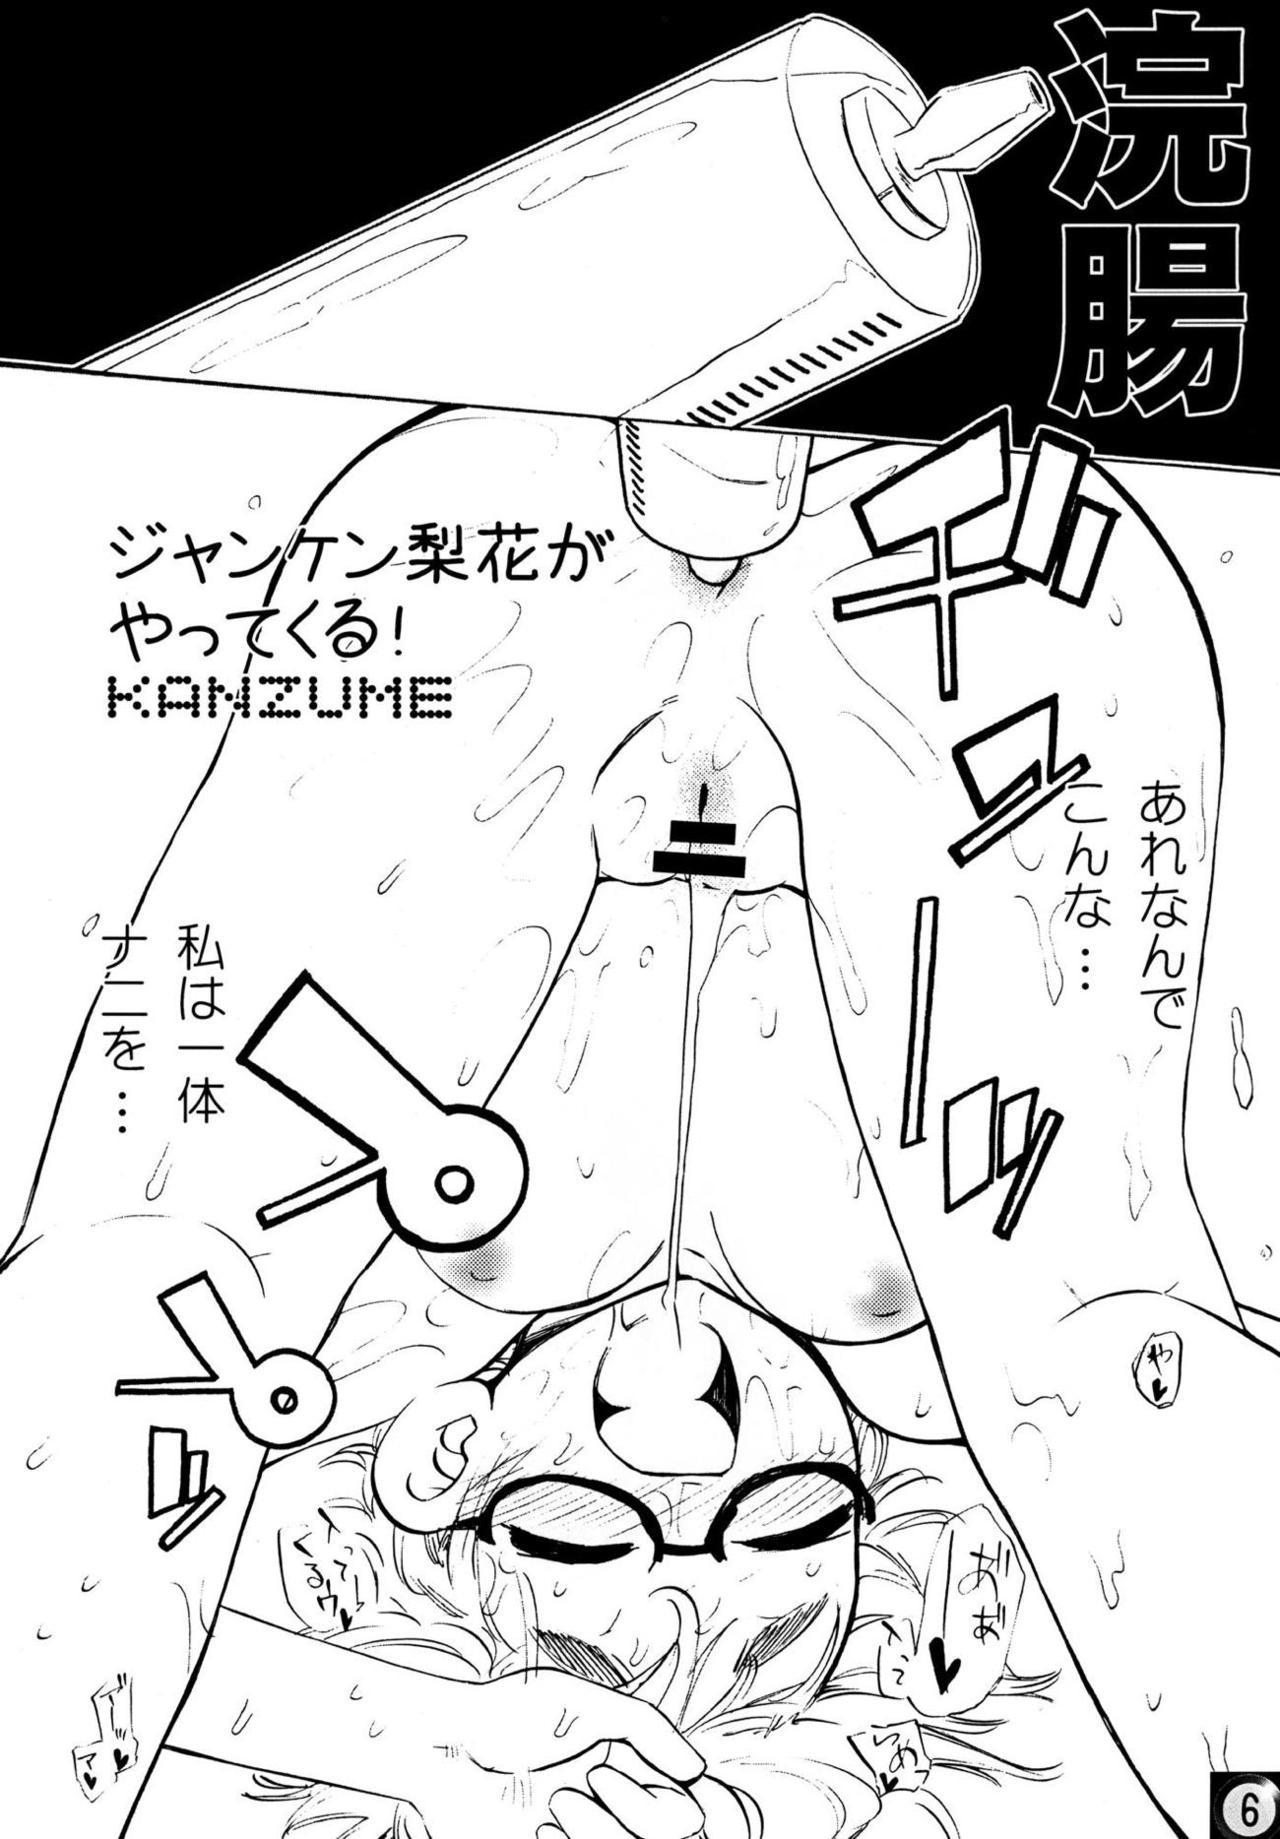 Public Ecchi ja Nai to Ikenai to Omoimasu!! - Higurashi no naku koro ni Uncut - Page 5